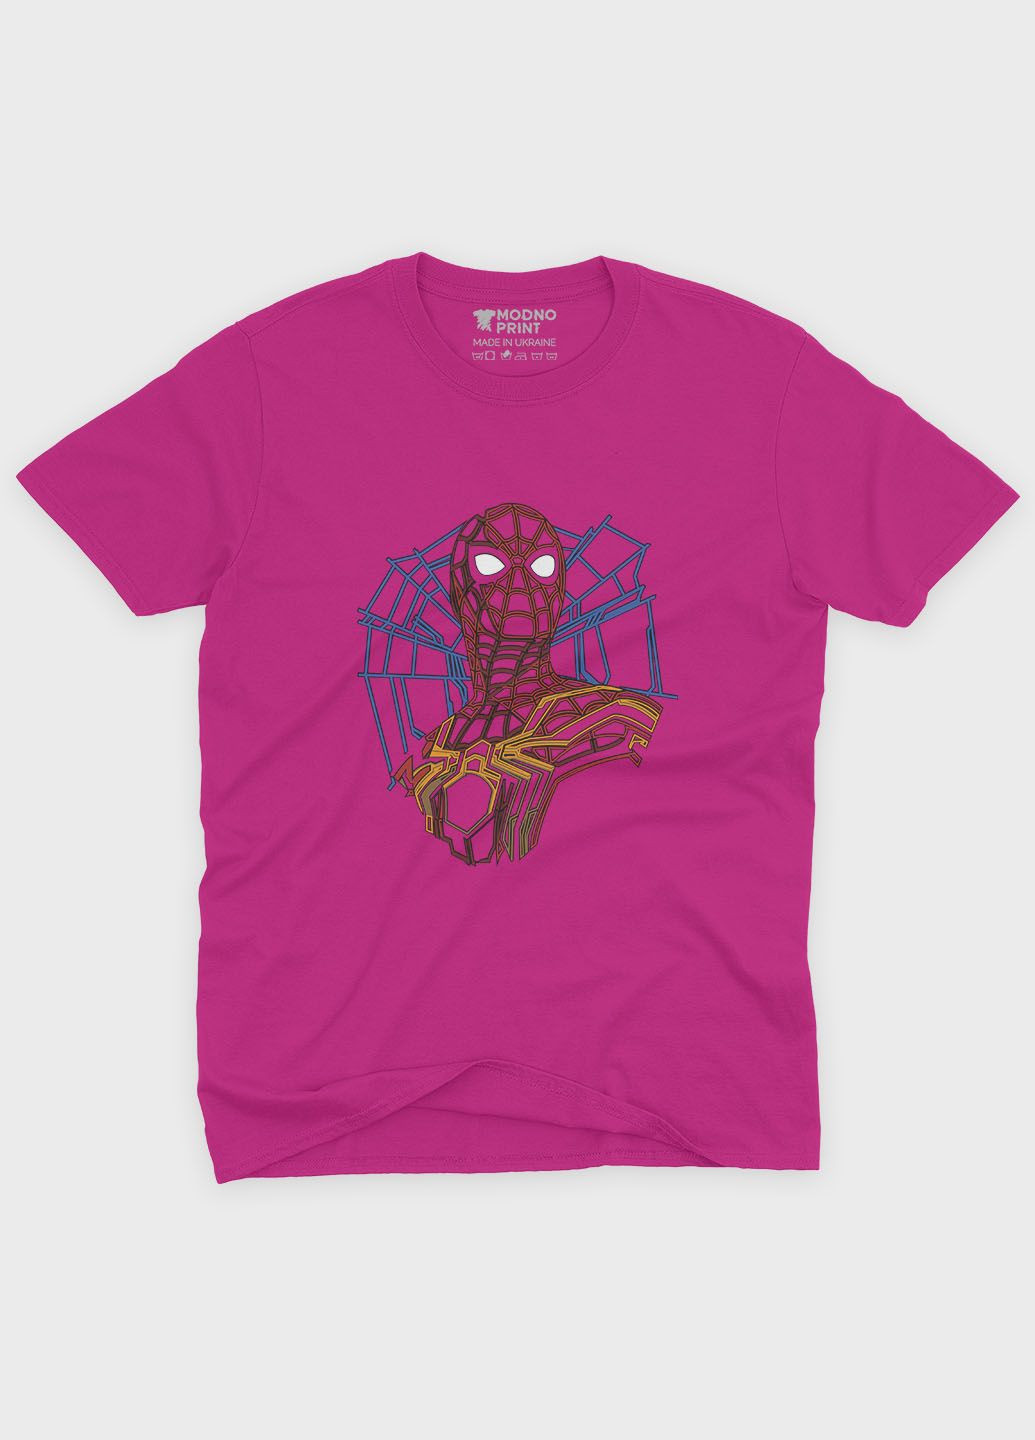 Рожева демісезонна футболка для хлопчика з принтом супергероя - людина-павук (ts001-1-fuxj-006-014-007-b) Modno